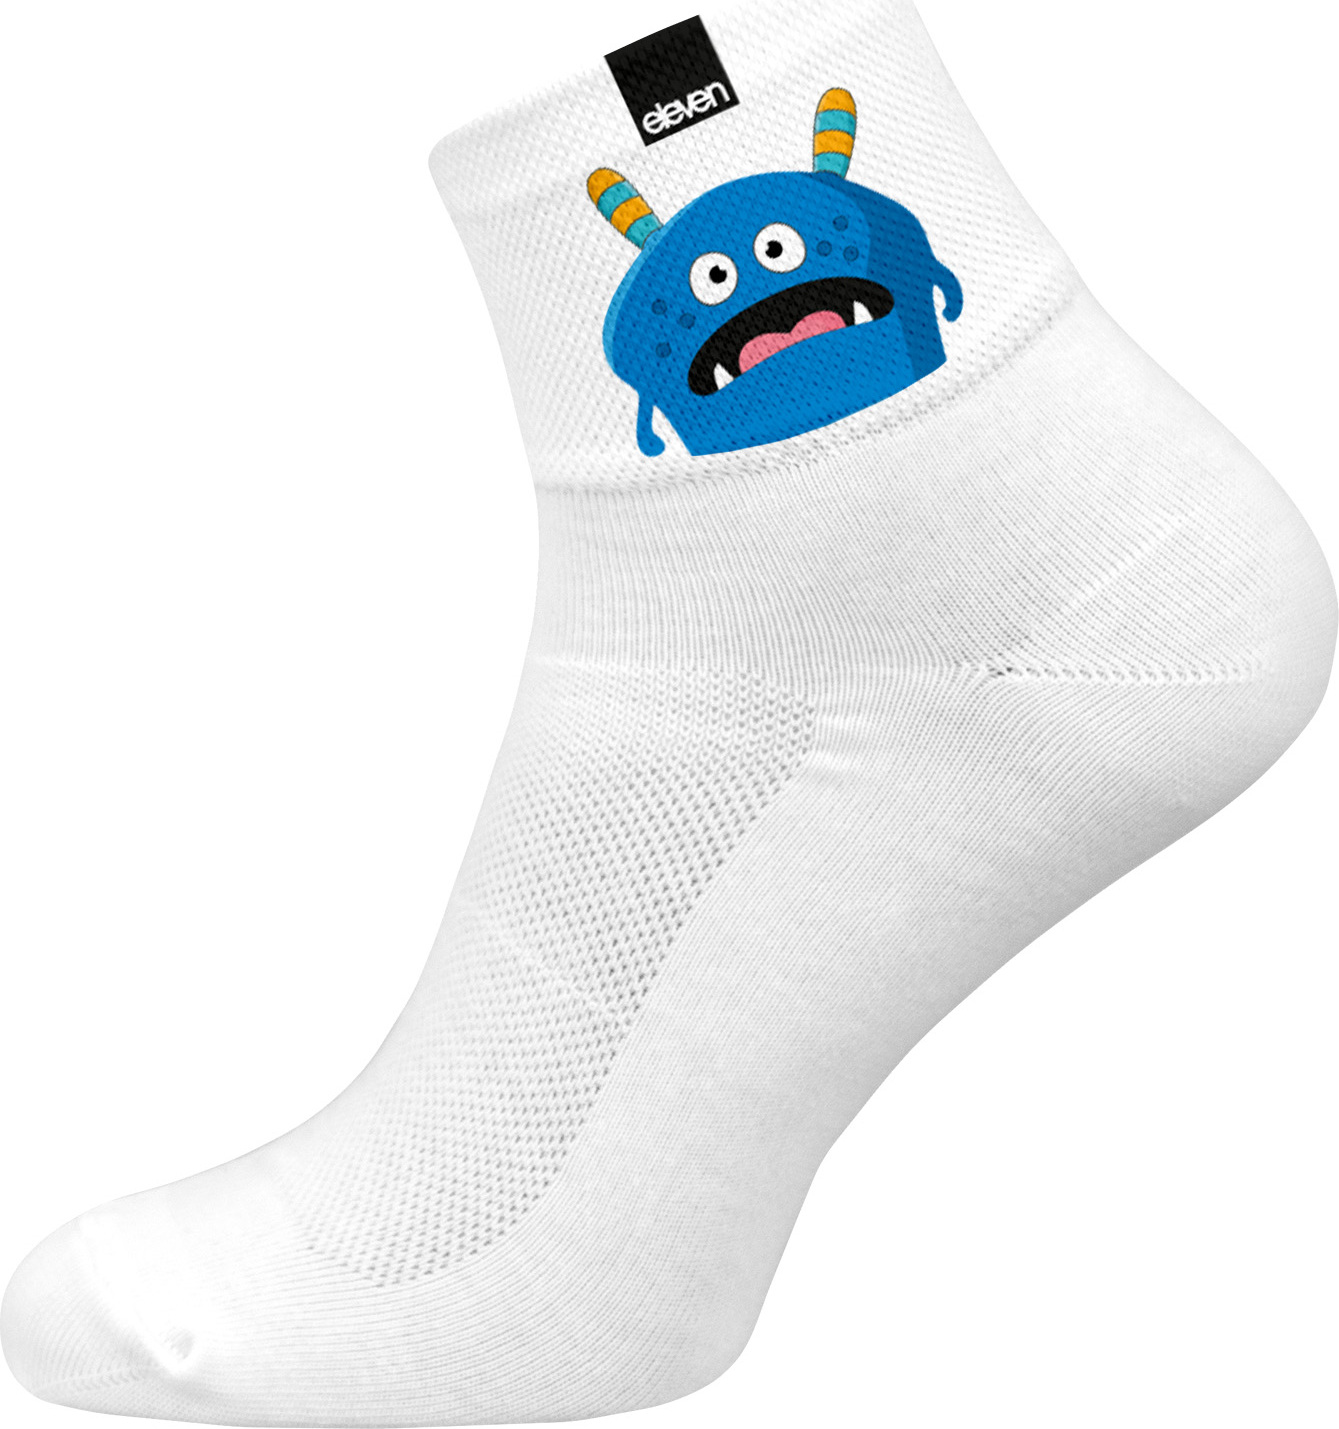 Ponožky Eleven Huba Monster Darkie Velikost: M (39-41)